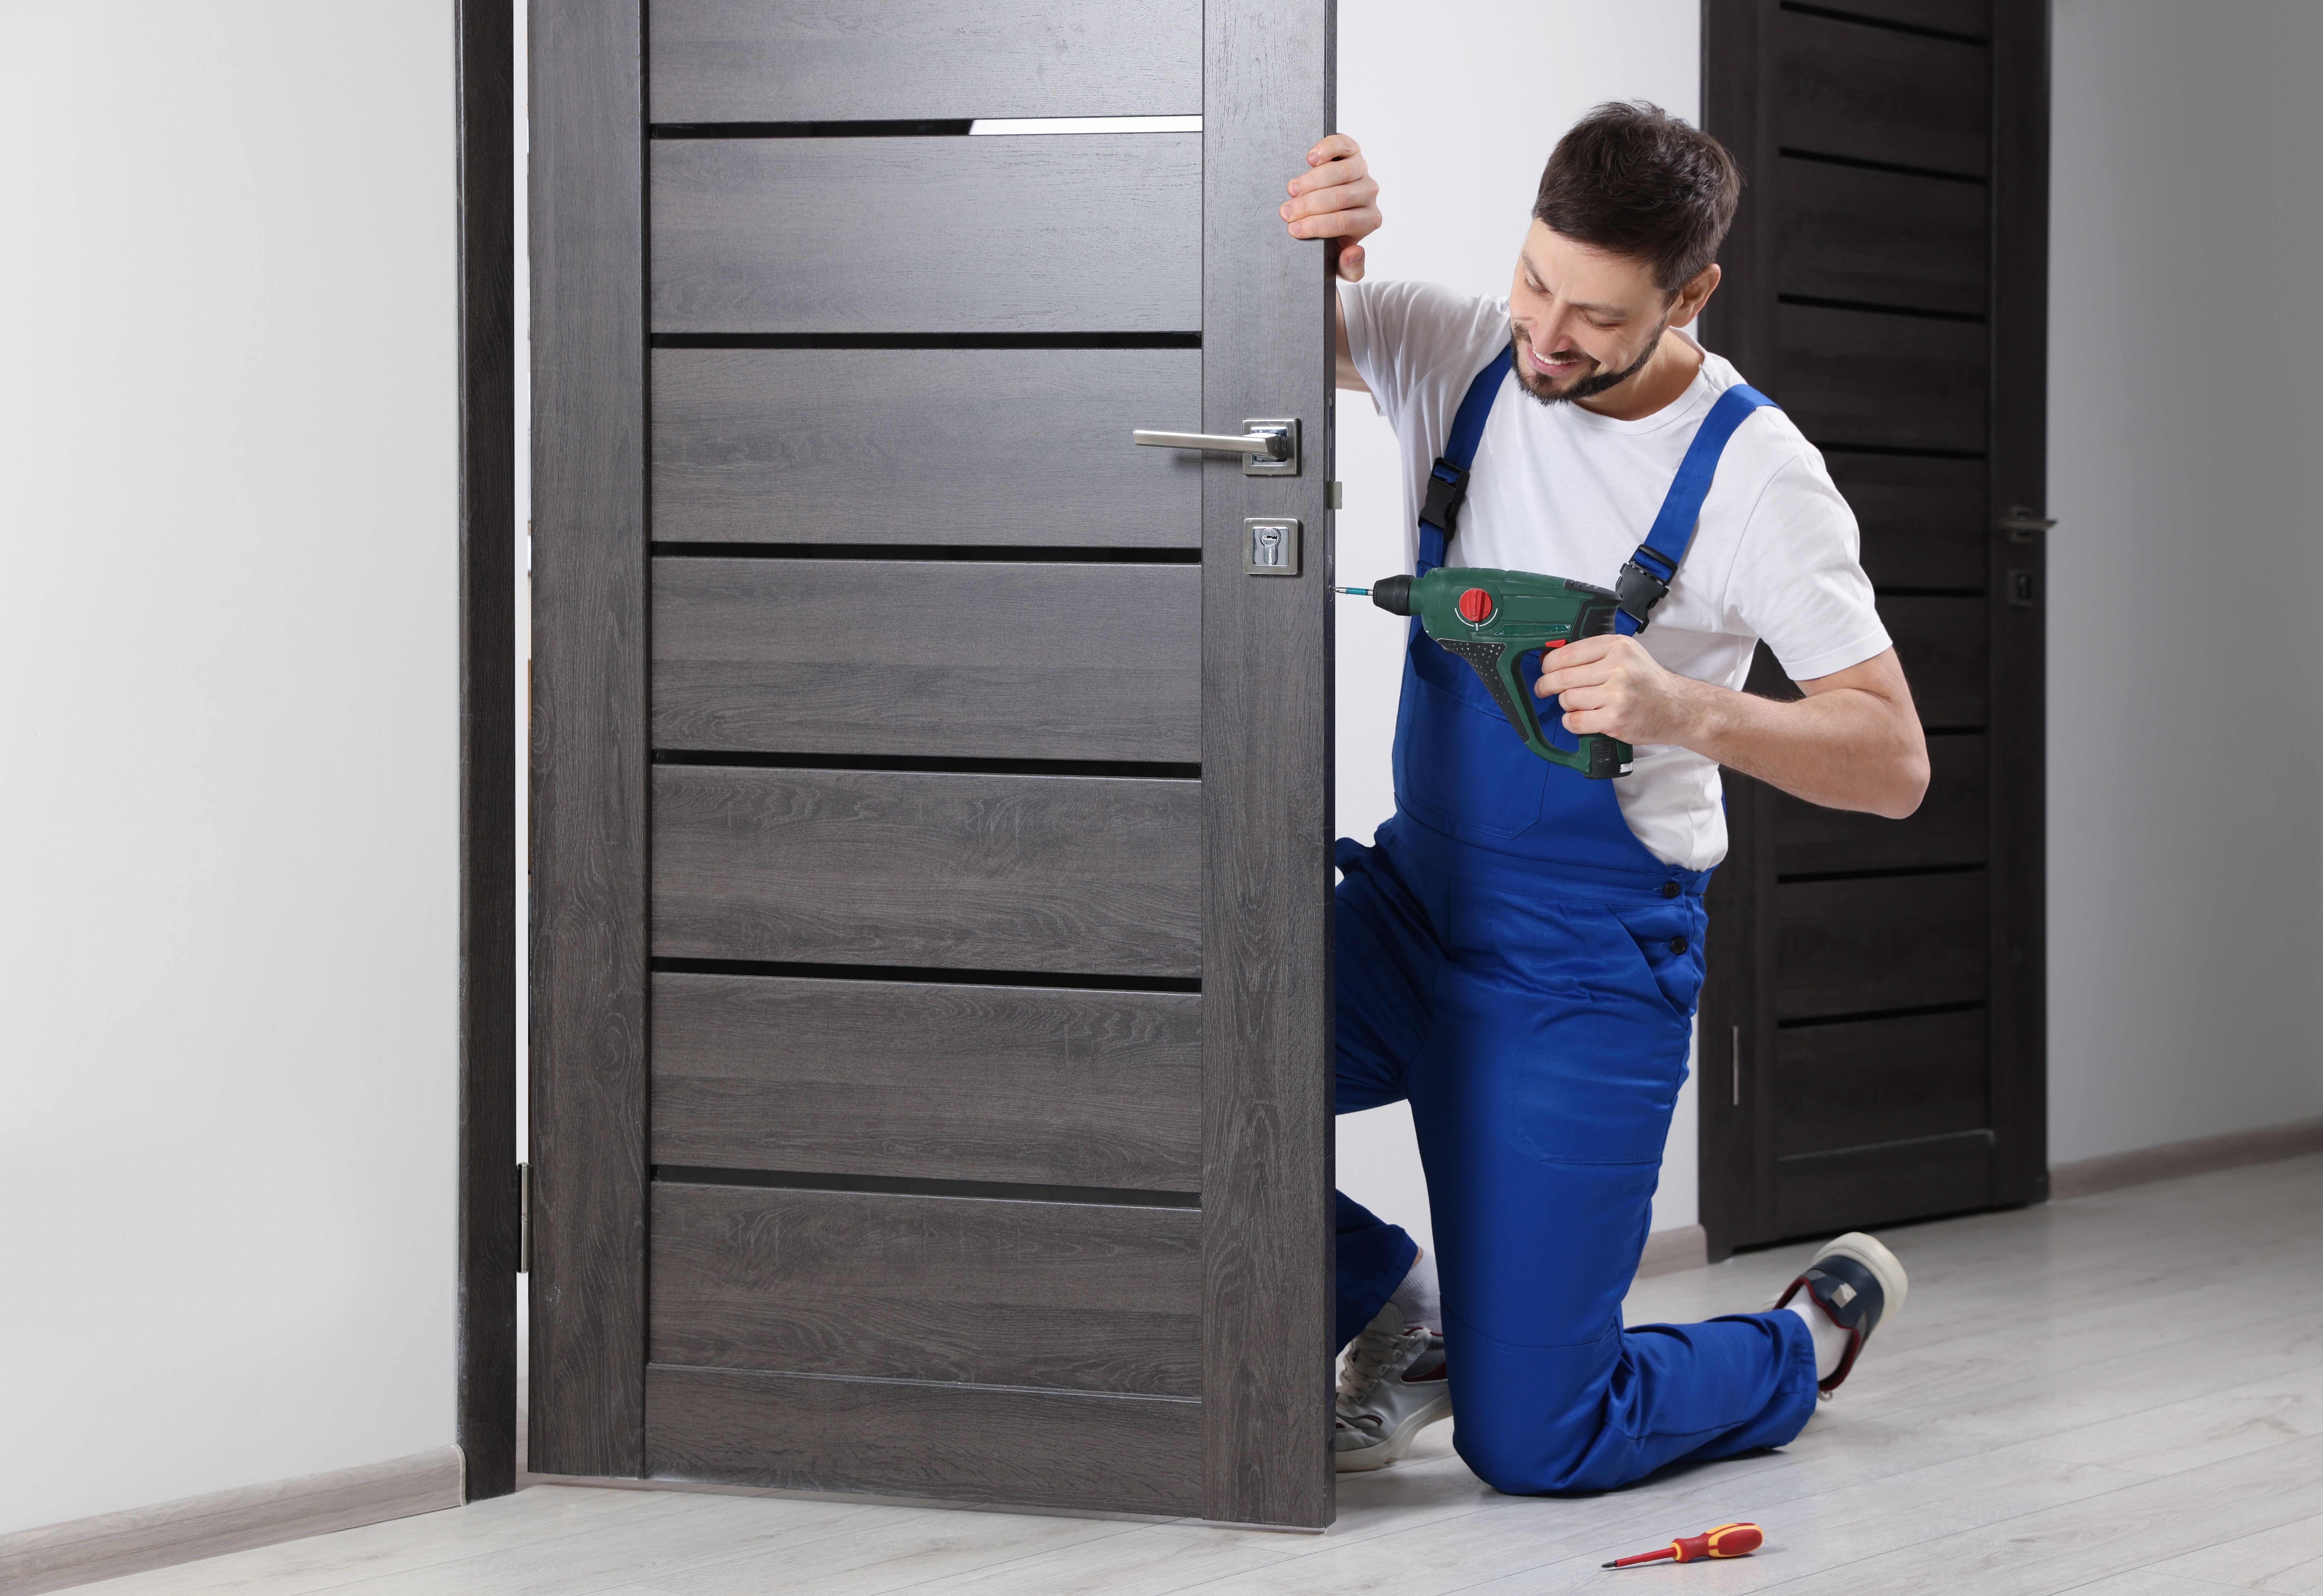 Worker_in_uniform_with_screw_gun_repairing_door_lock_indoors